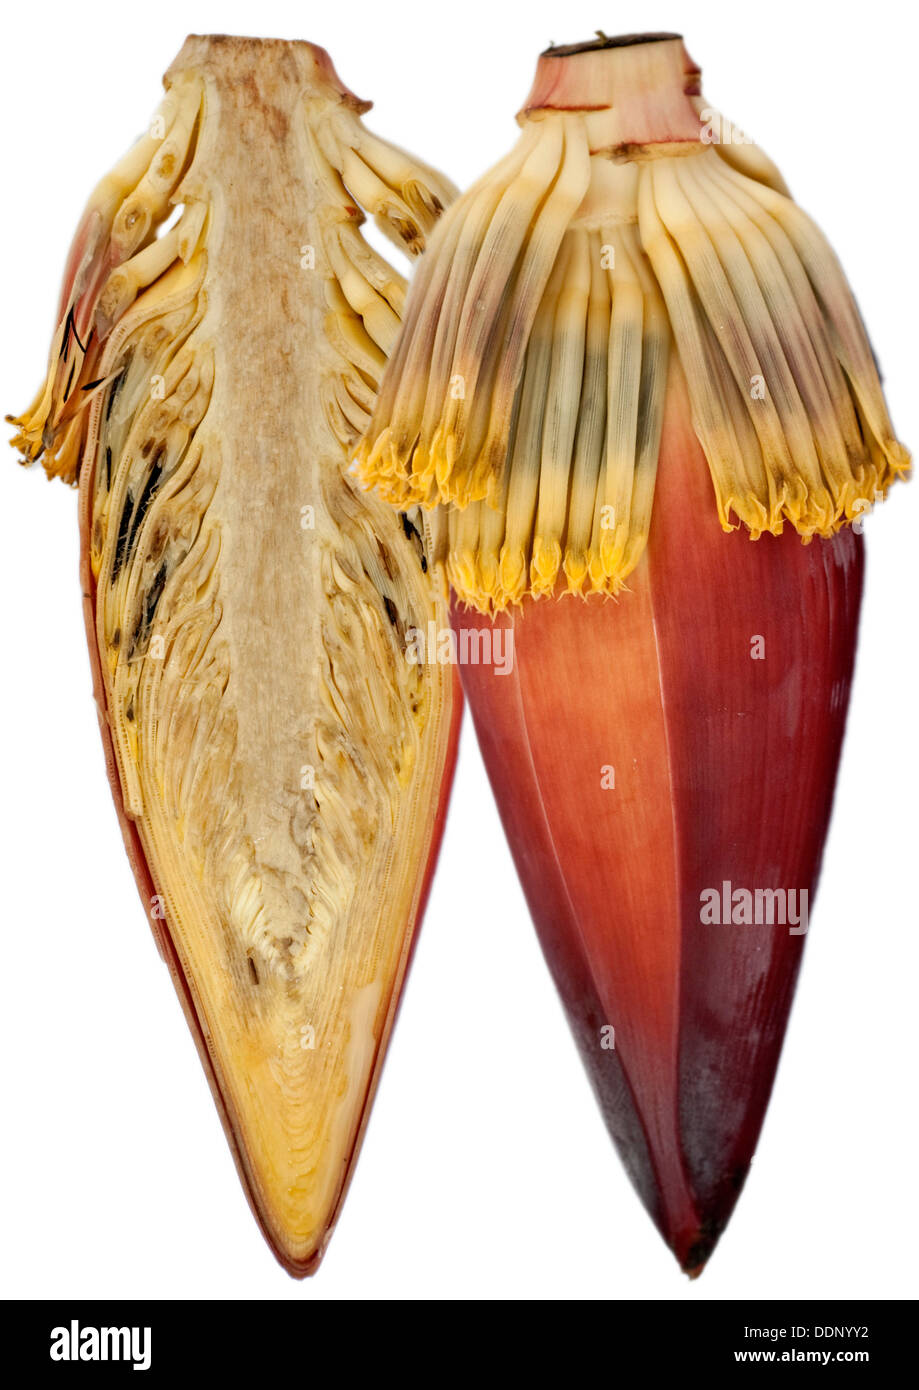 Banana Blossom, Banana cuore (Musa) Foto Stock